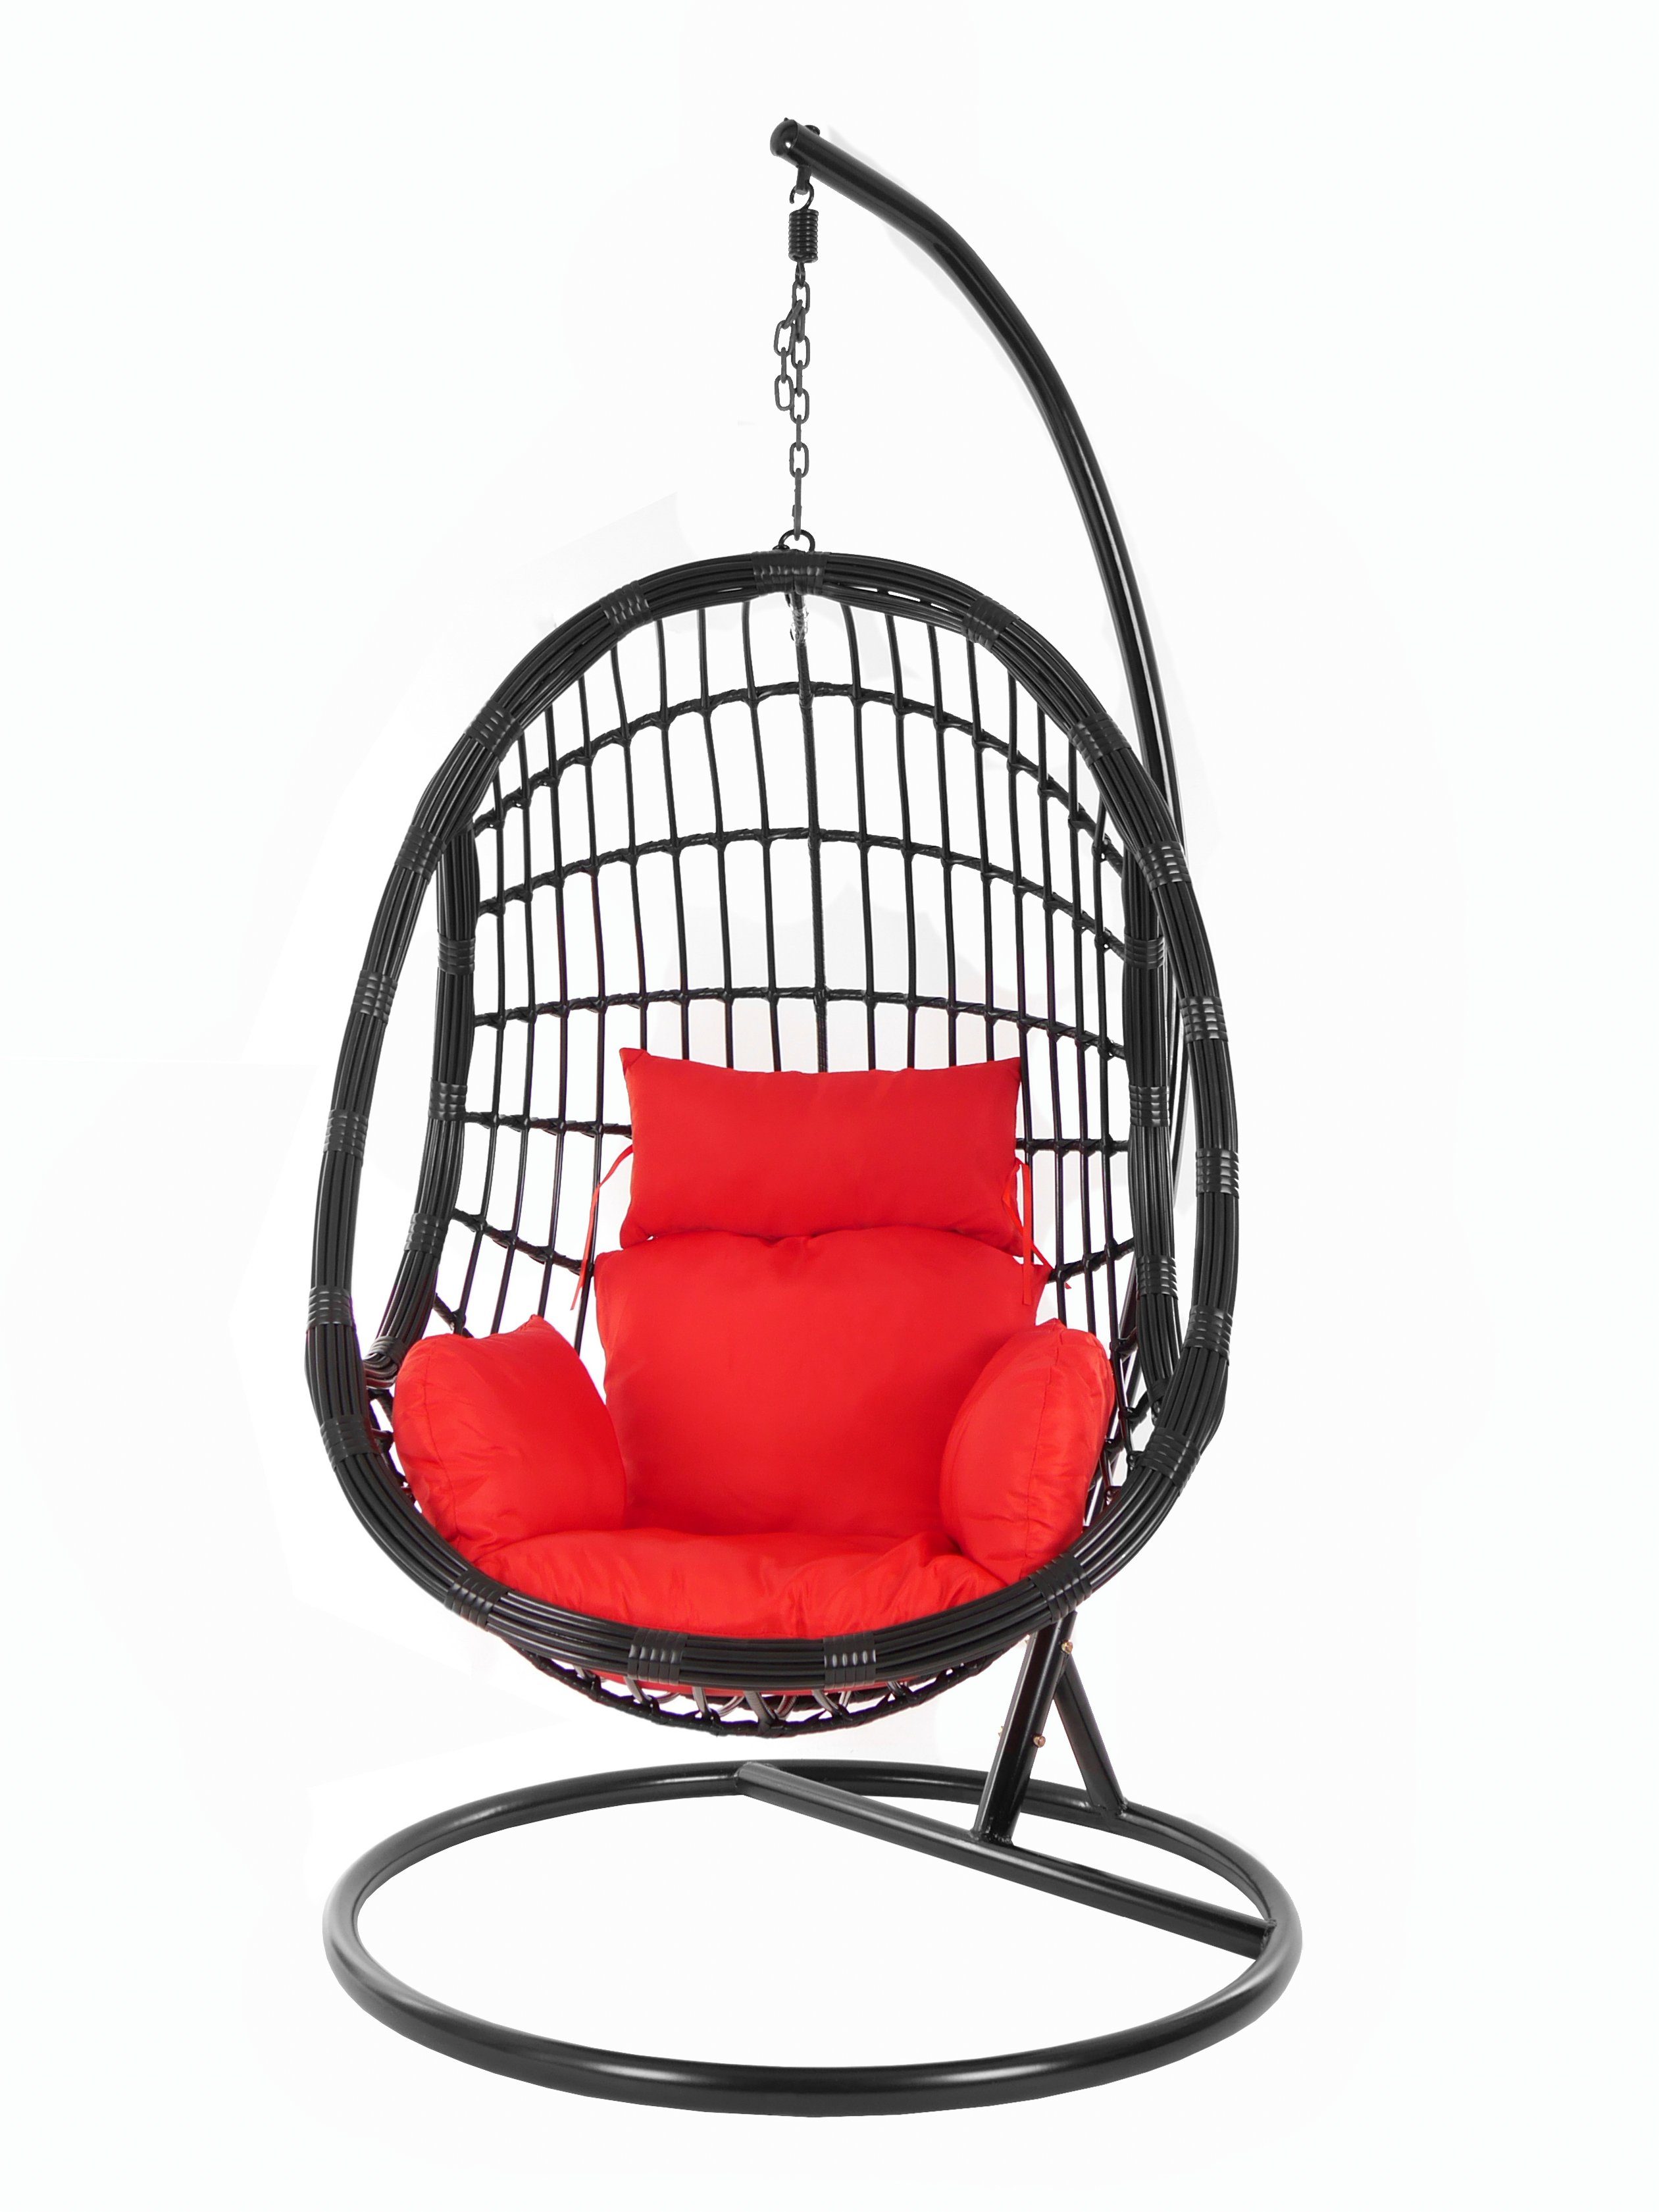 KIDEO Hängesessel PALMANOVA Schwebesessel, scarlet) Swing Nest-Kissen Chair, und Kissen, mit Hängesessel Gestell black, rot (3050